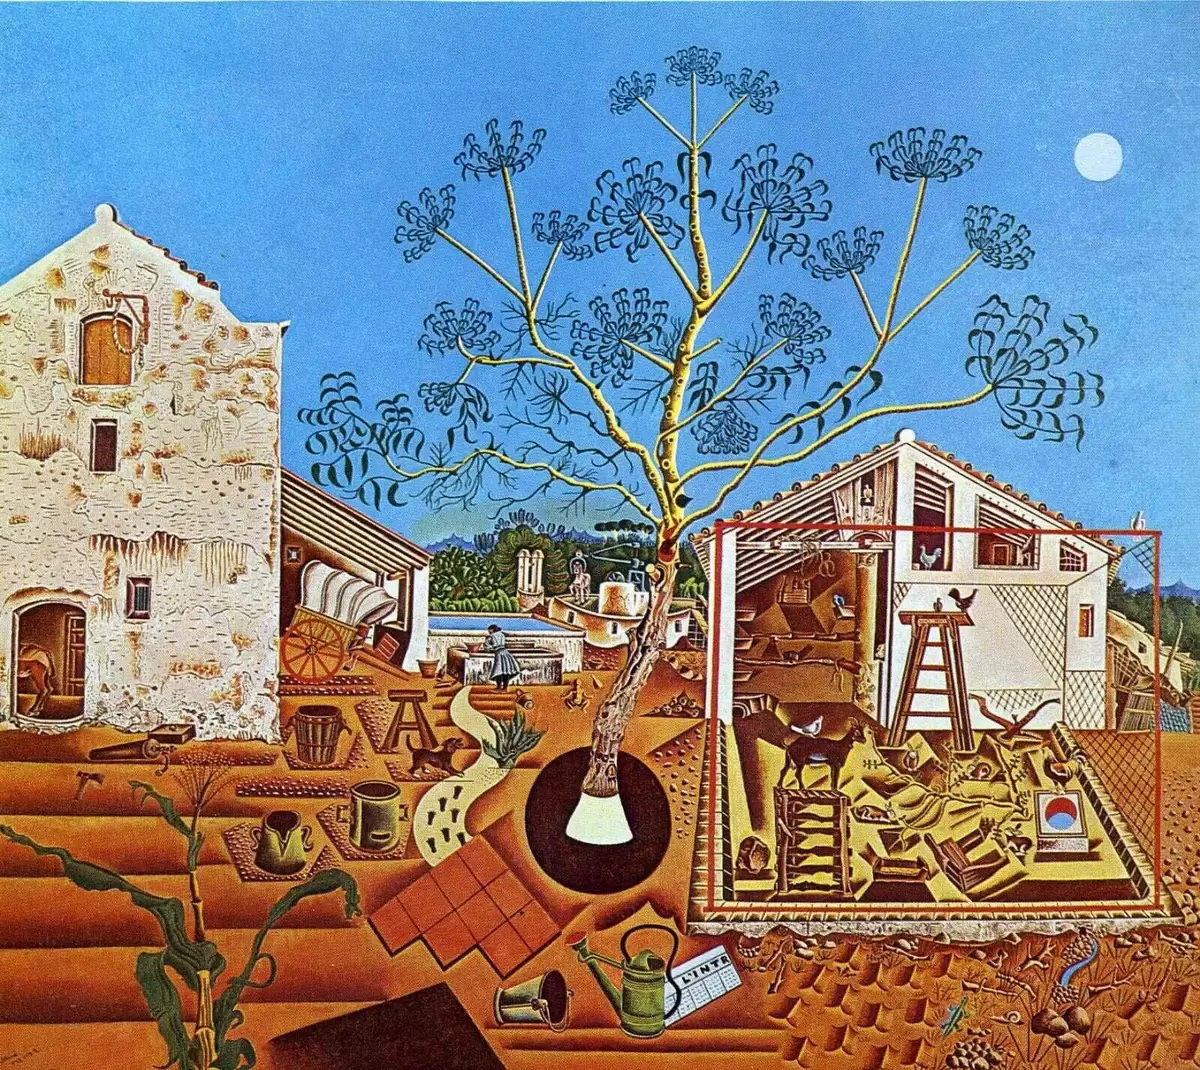 Miró's "The Farm"